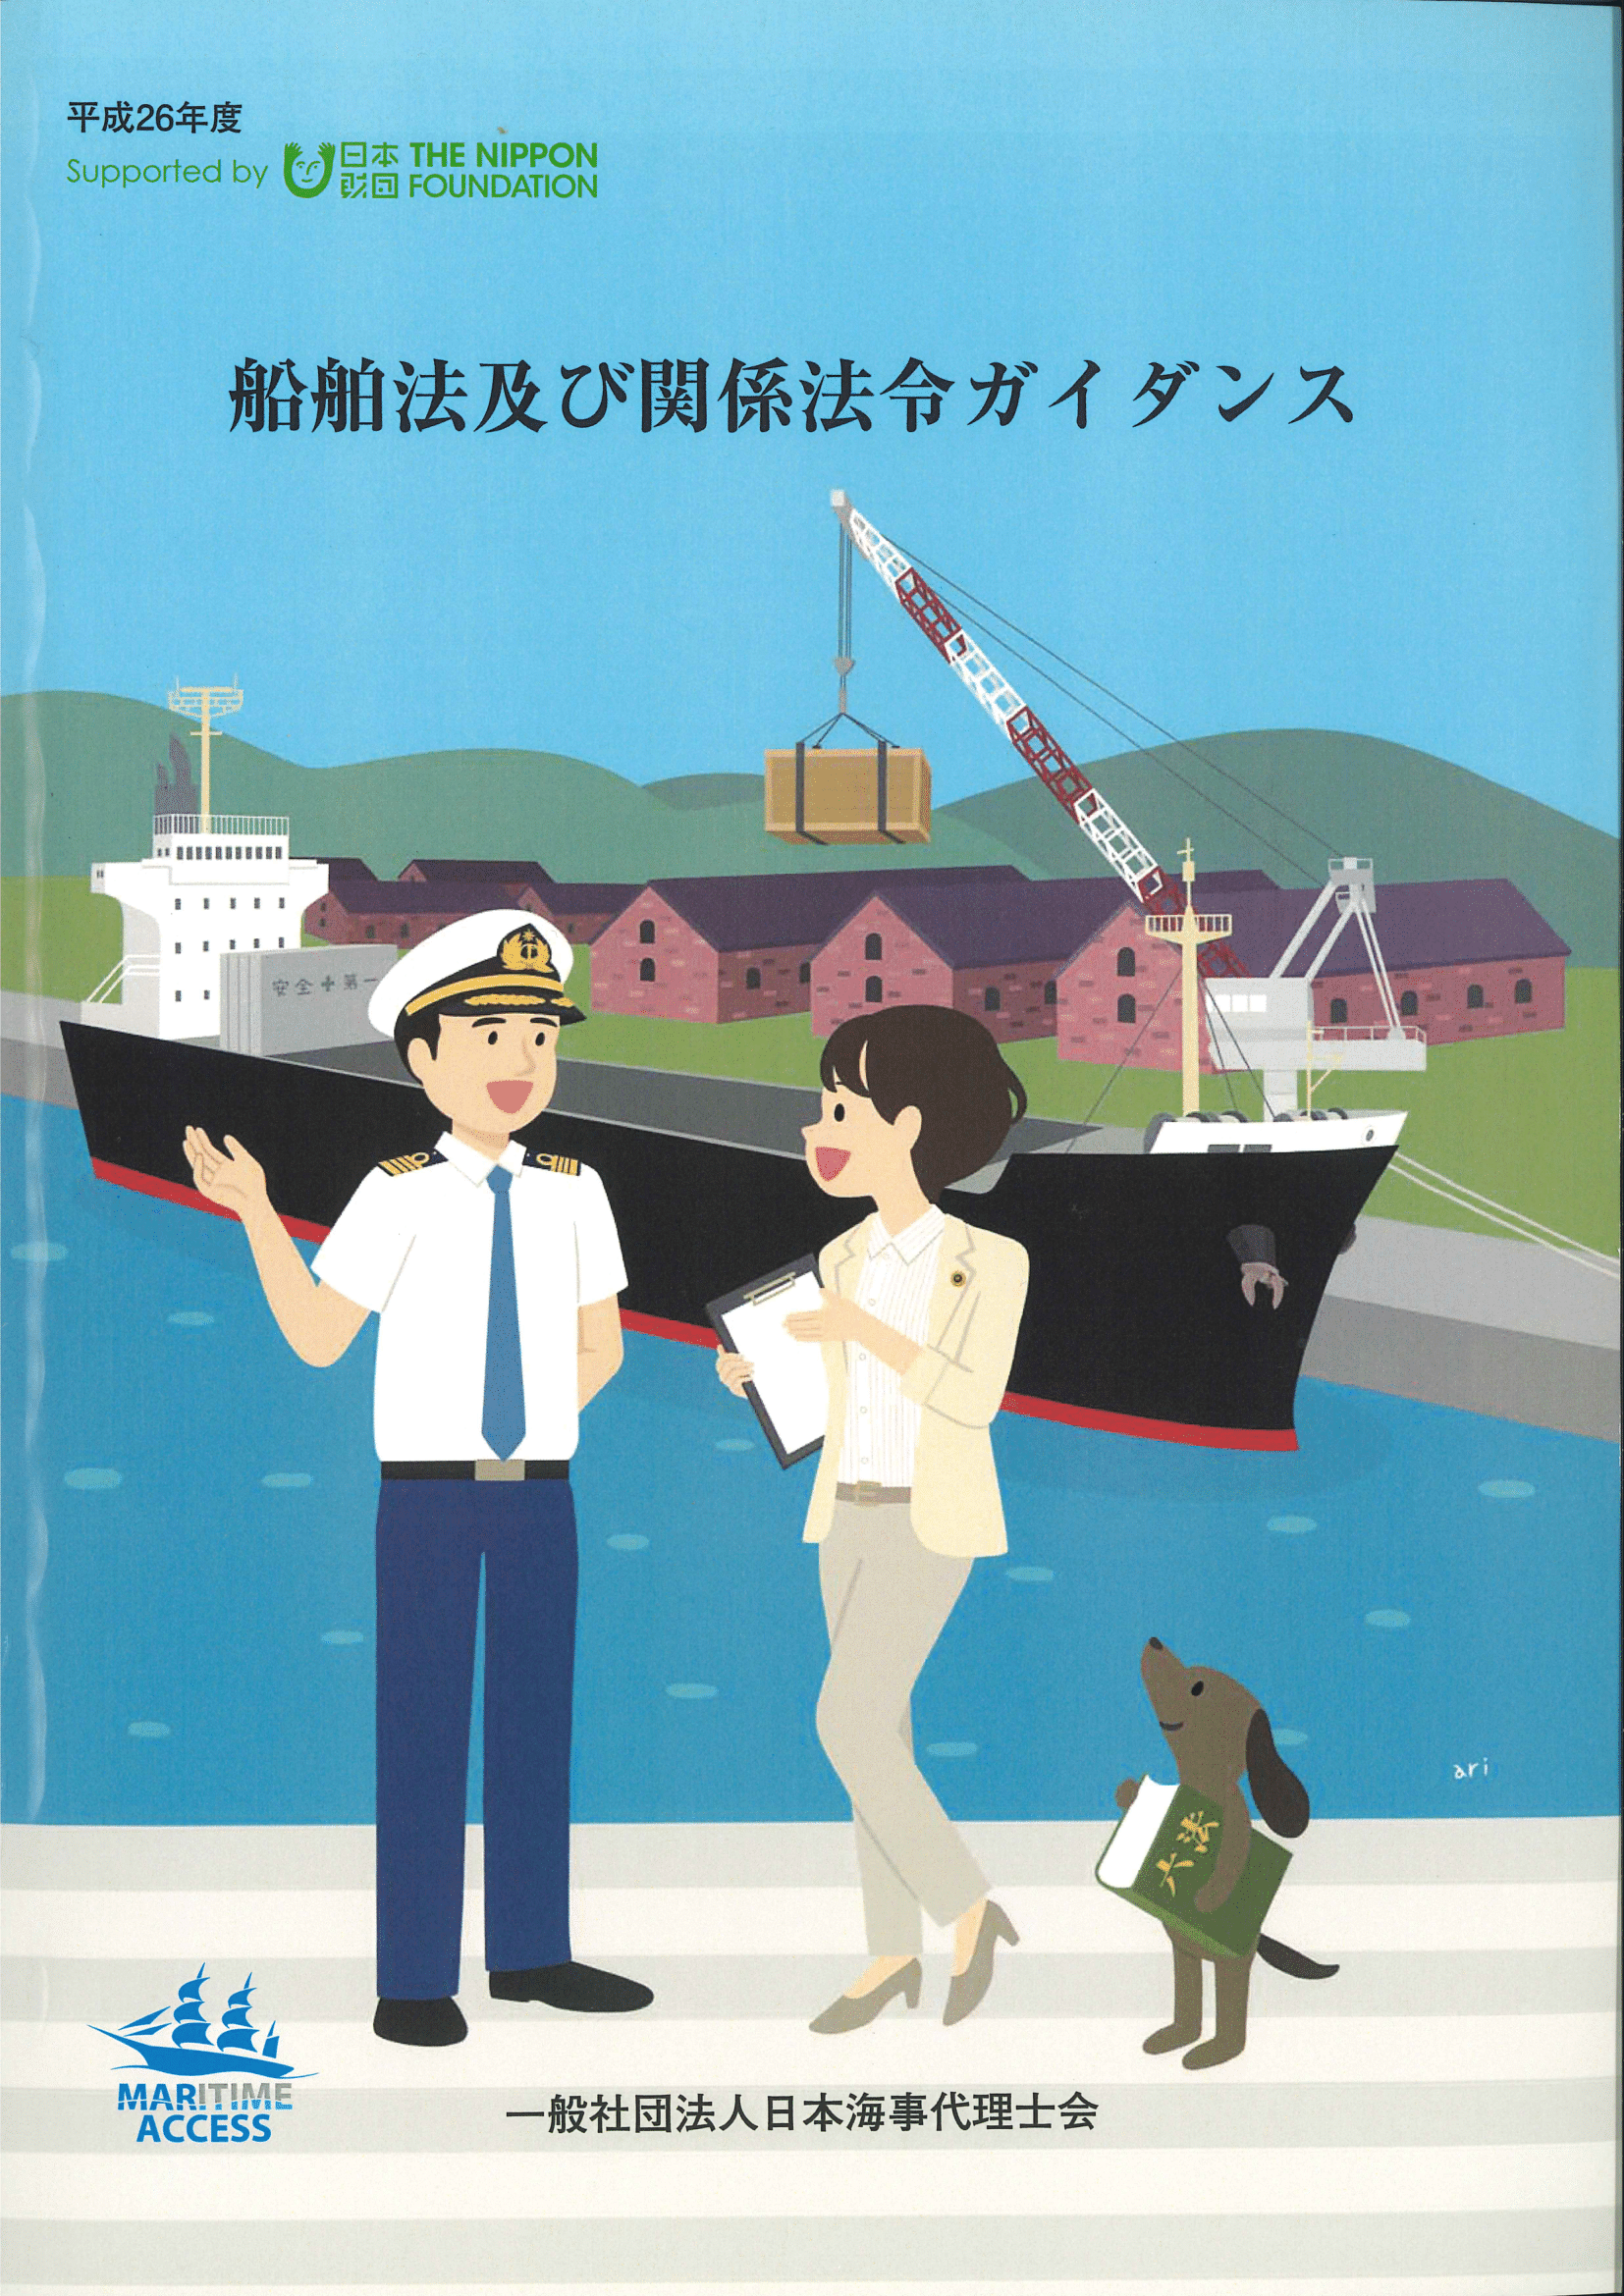 船舶法及び関係法令ガイダンス（平成27年3月発行）